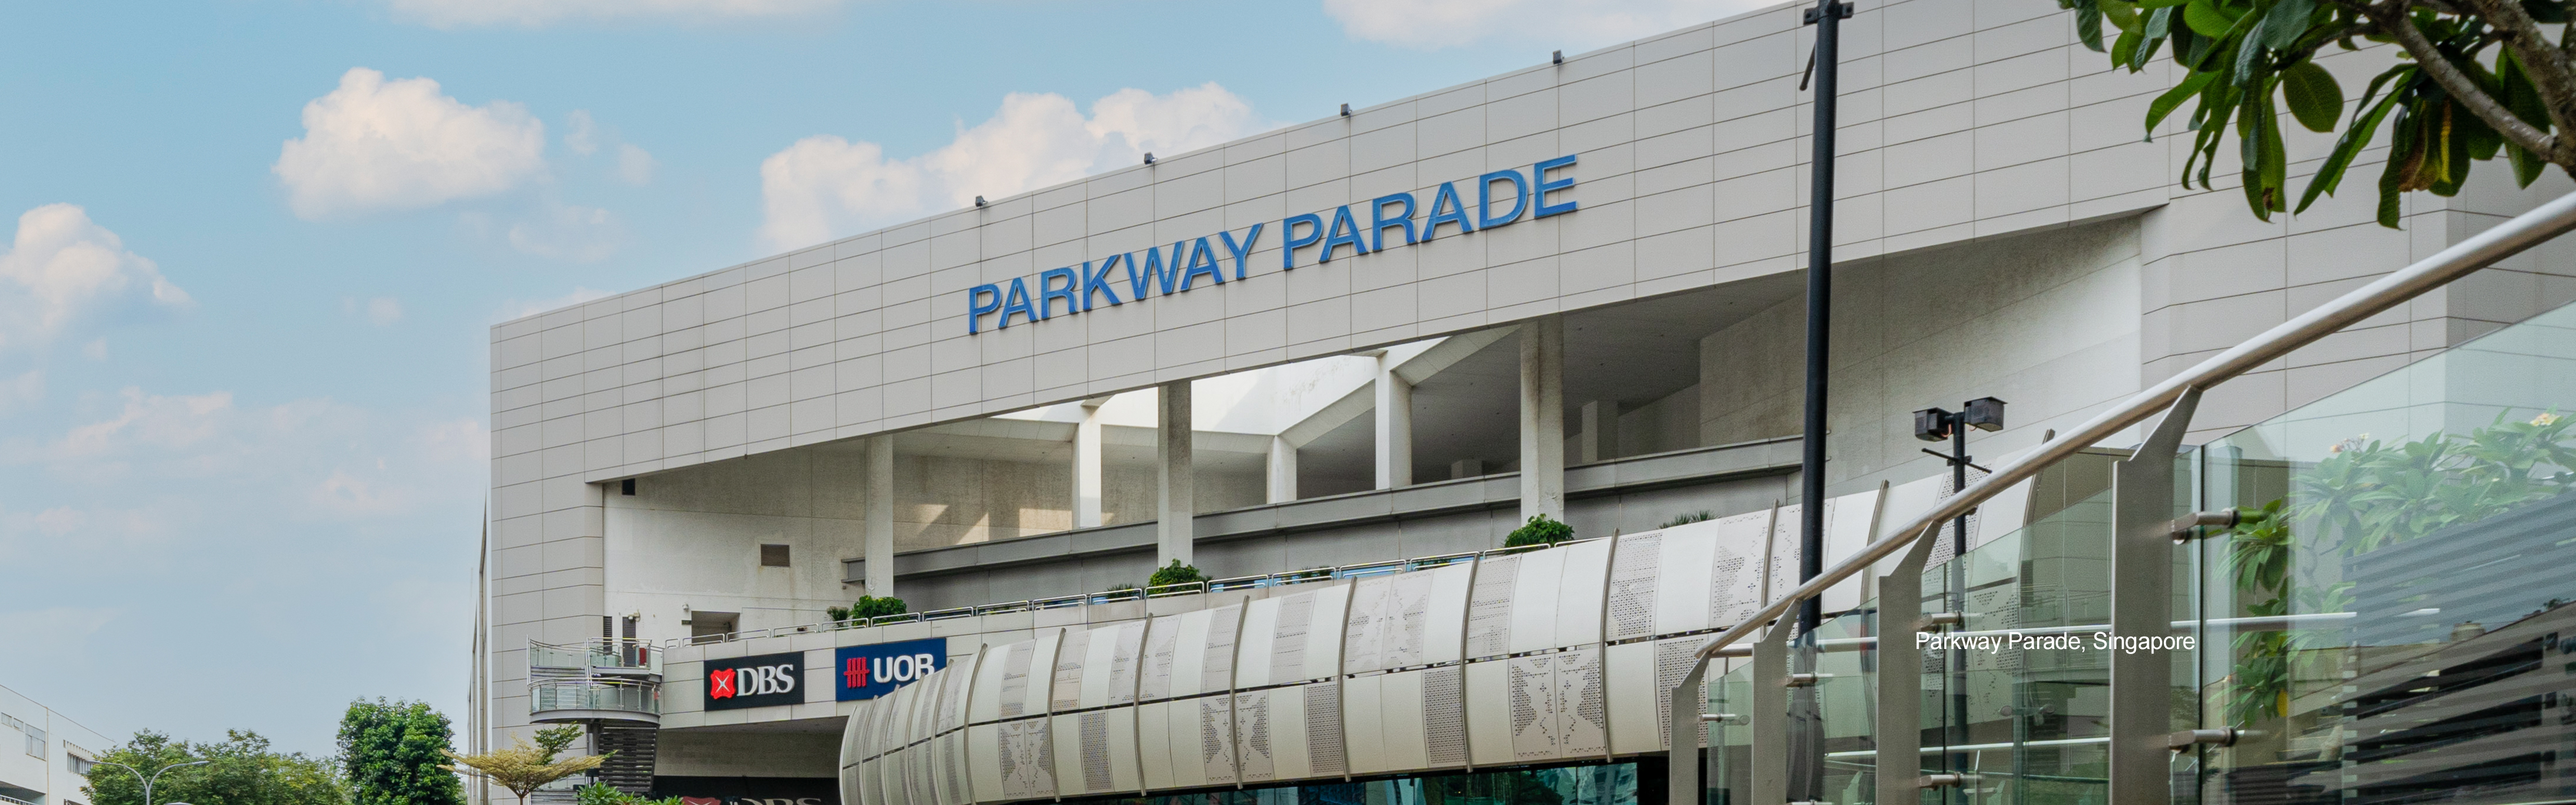 parkway-parade-4608x1440-v3.png